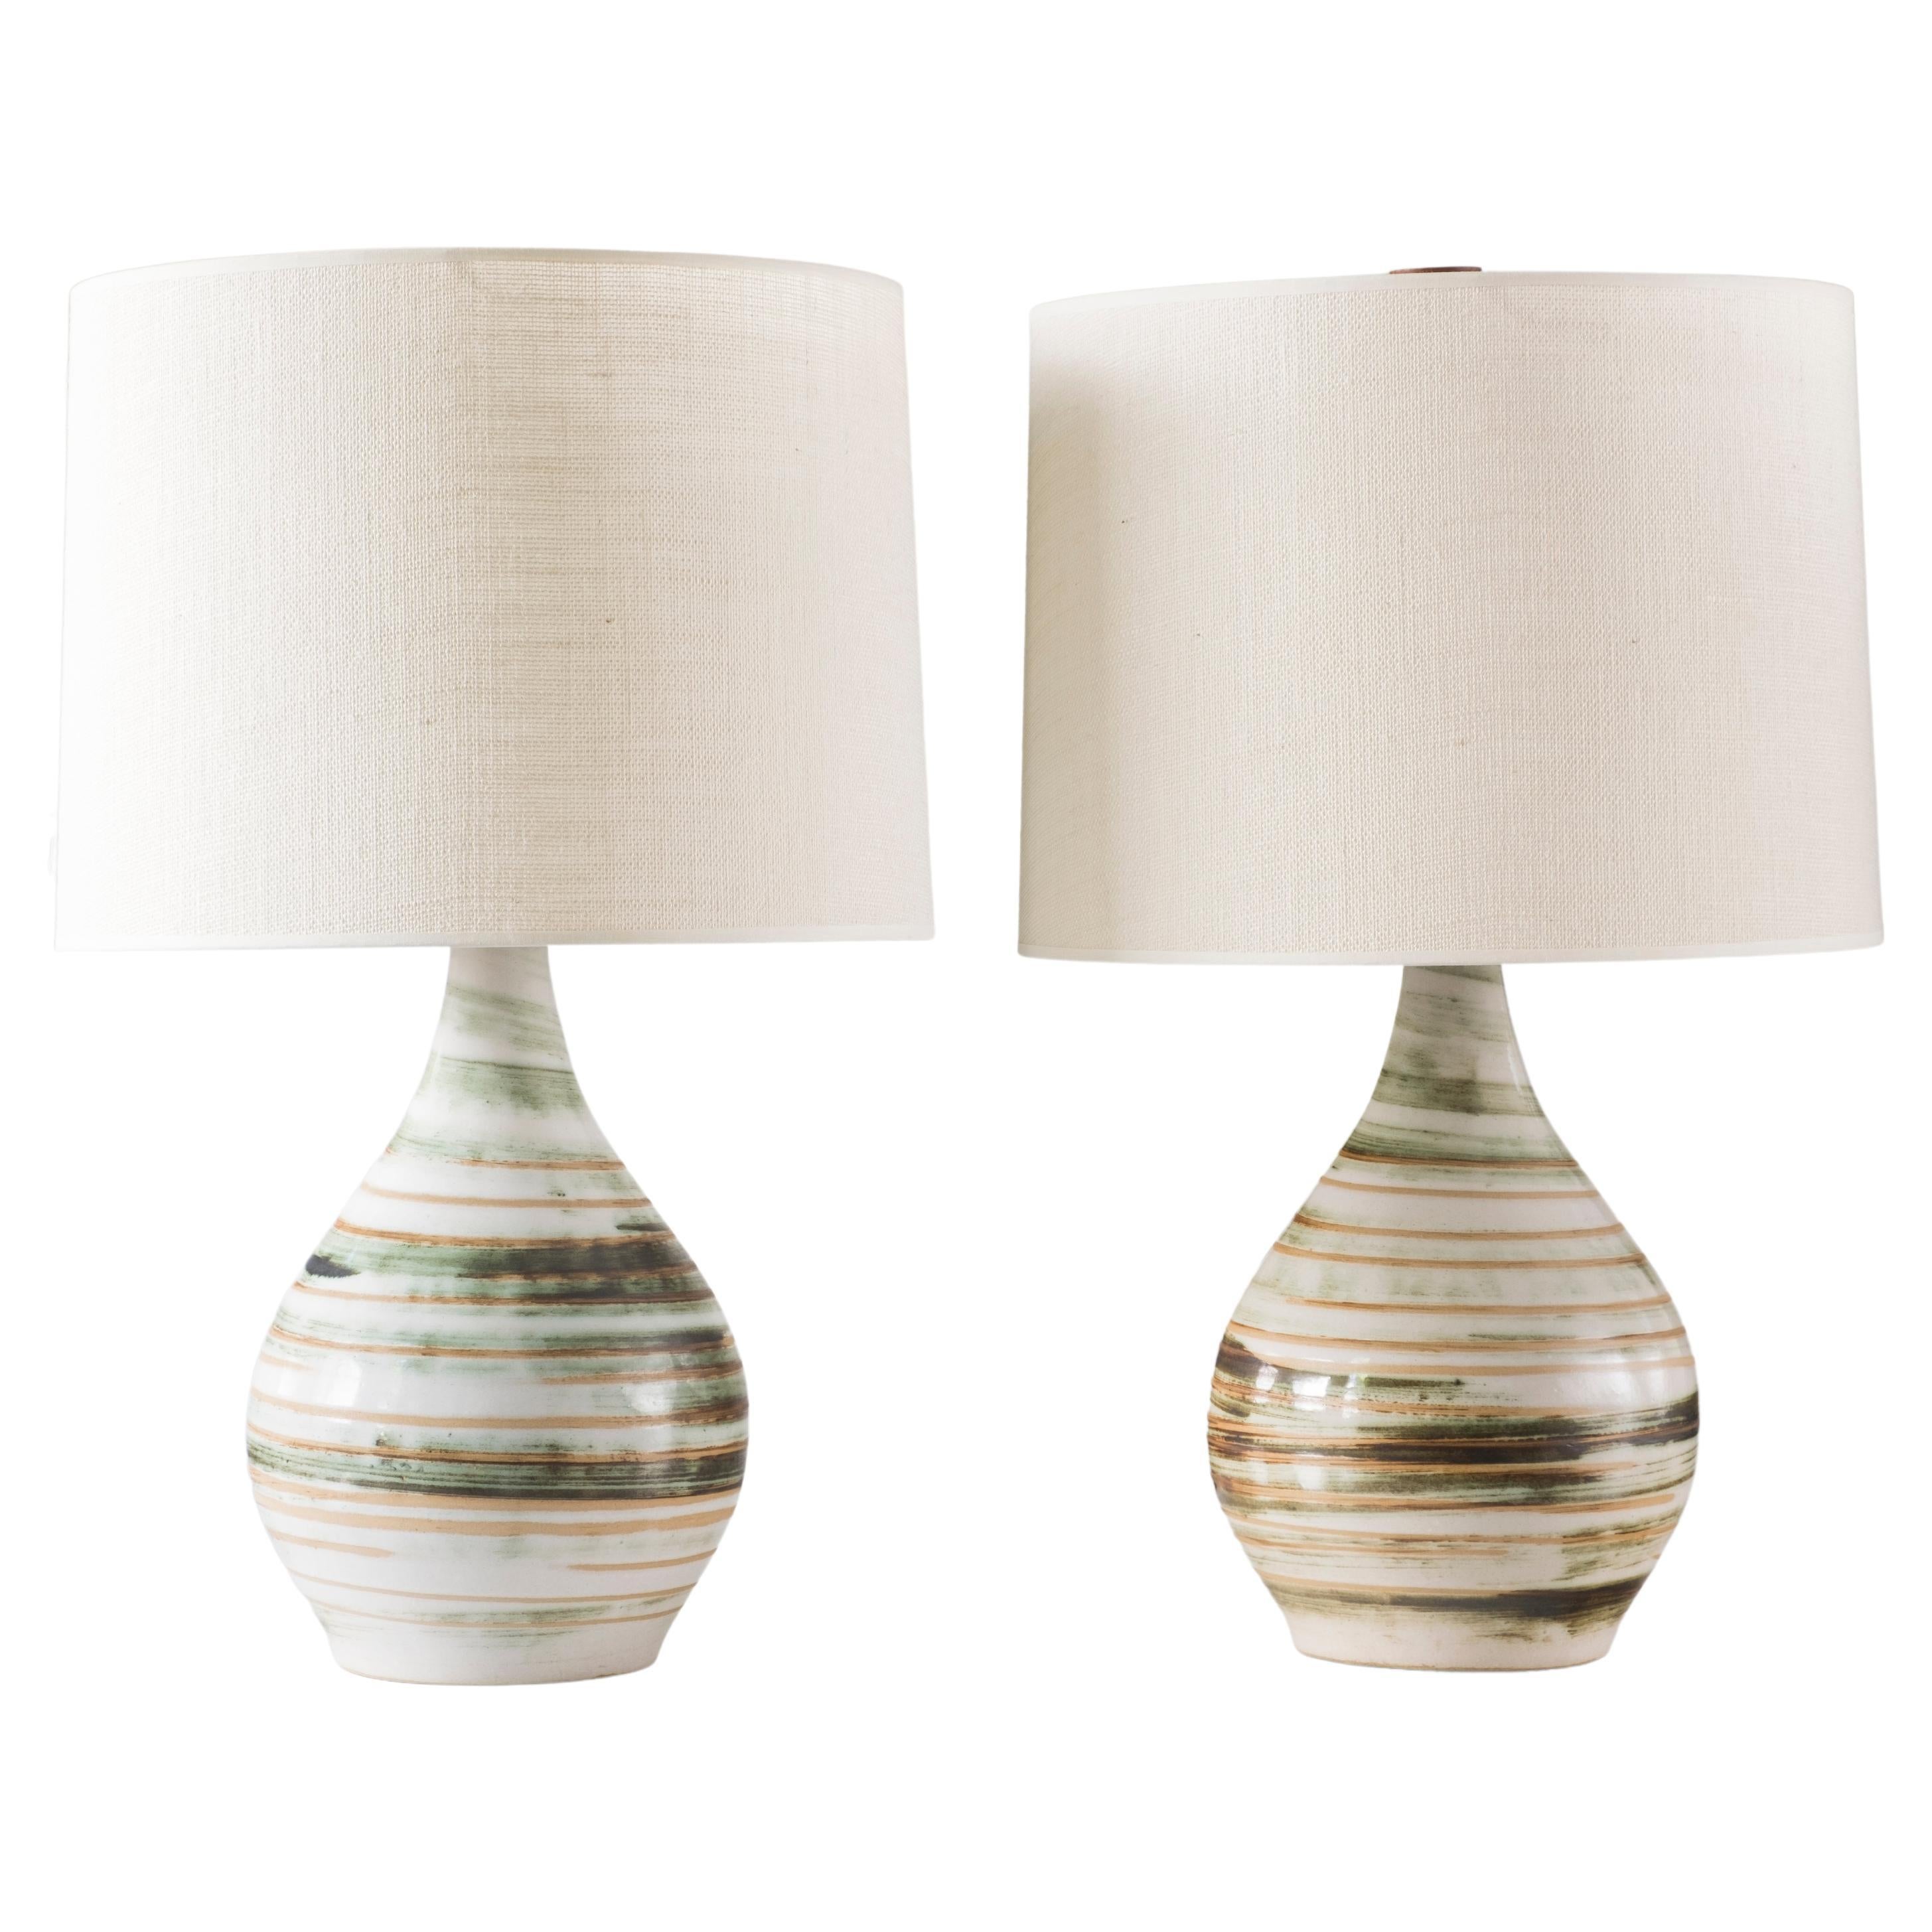 Martz Ceramic Table Lamp Pair, Model 101, Green / White Swirl